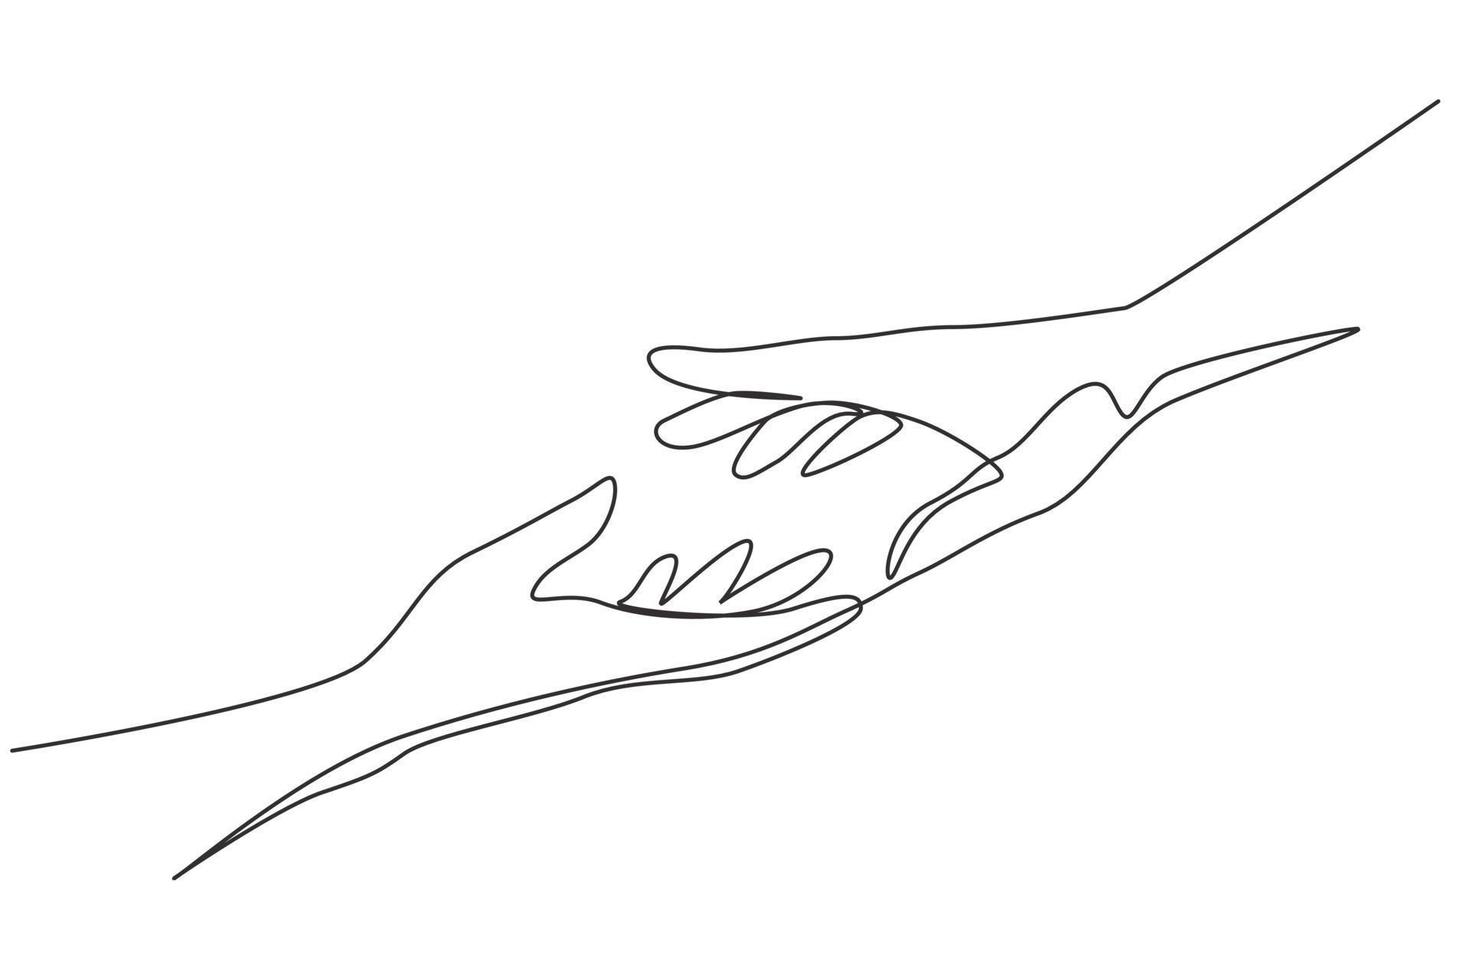 contínua uma linha desenhando duas mãos estendendo-se uma para a outra. sinal ou símbolo de amor, esperança, carinho, ajuda. comunicação com gestos com as mãos desenho de linha única ilustração gráfica de vetor